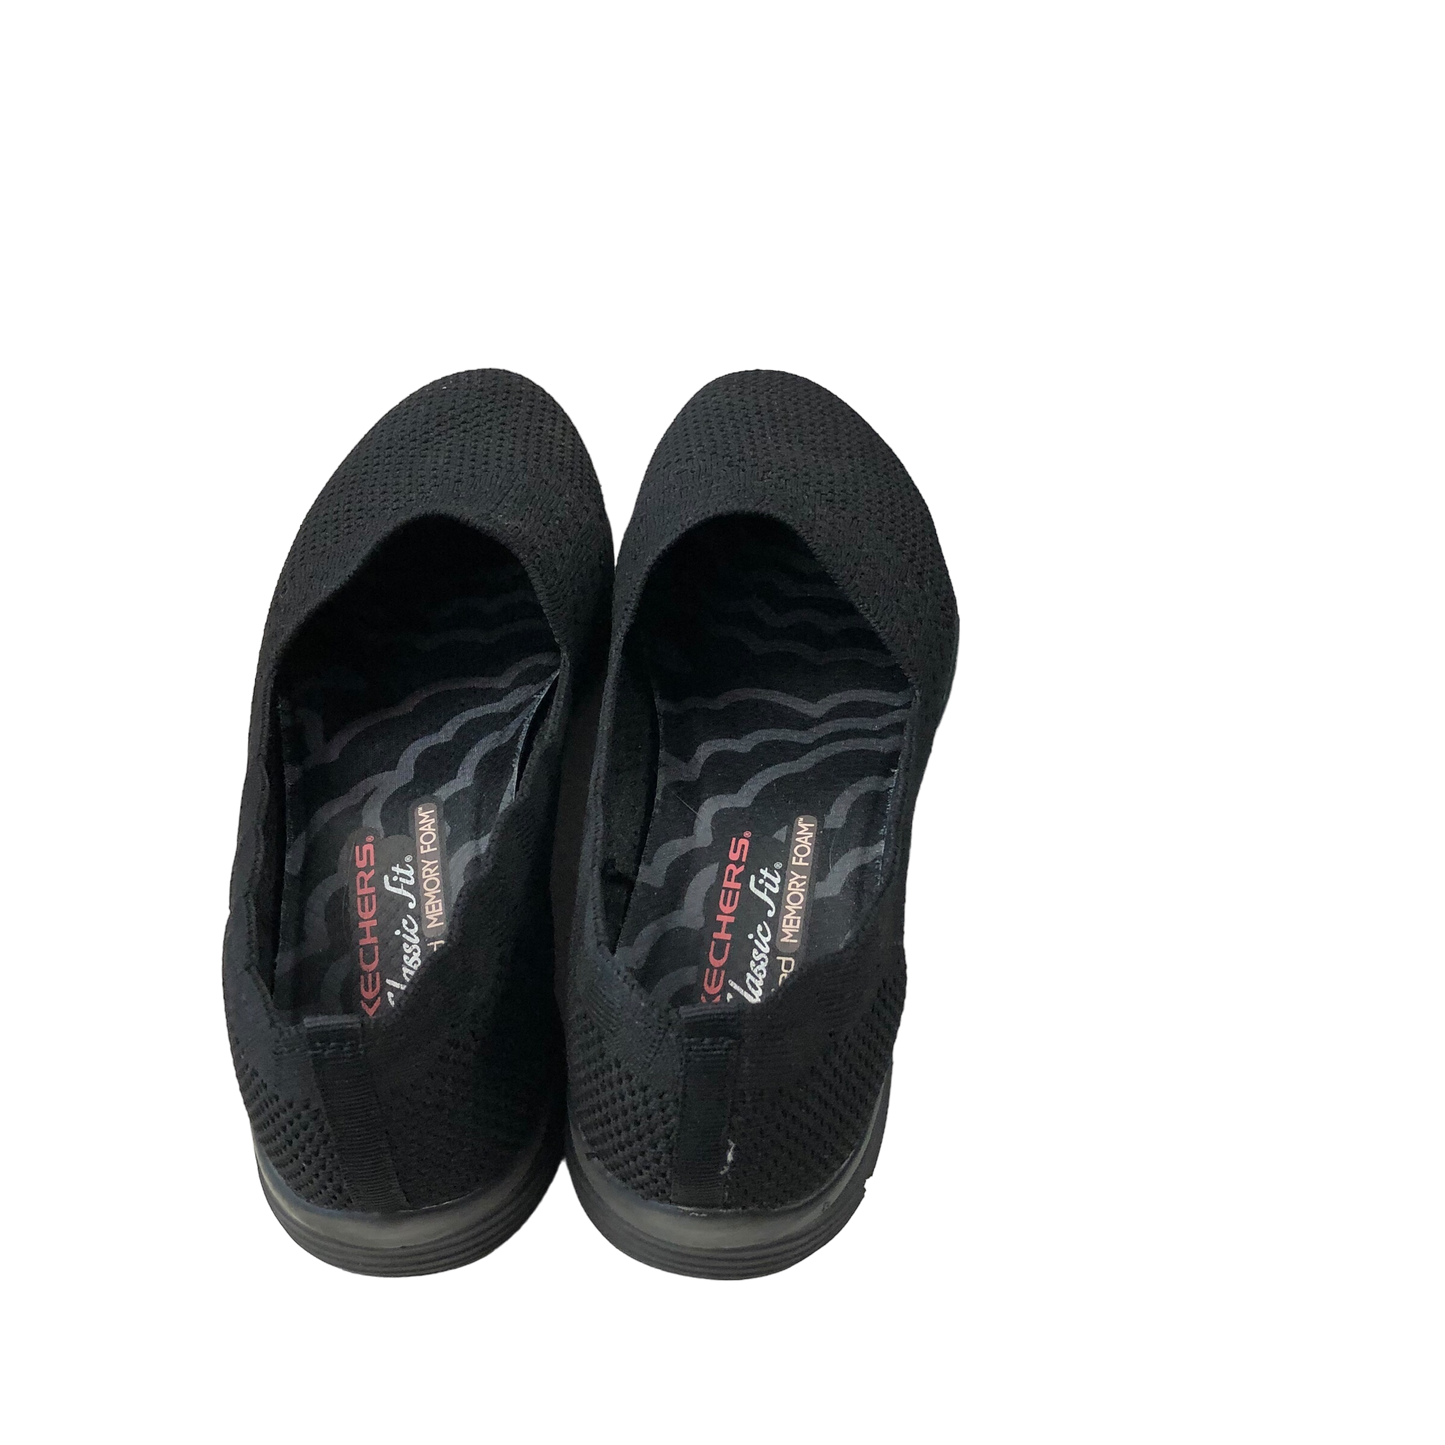 Black Shoes Flats Skechers, Size 7.5